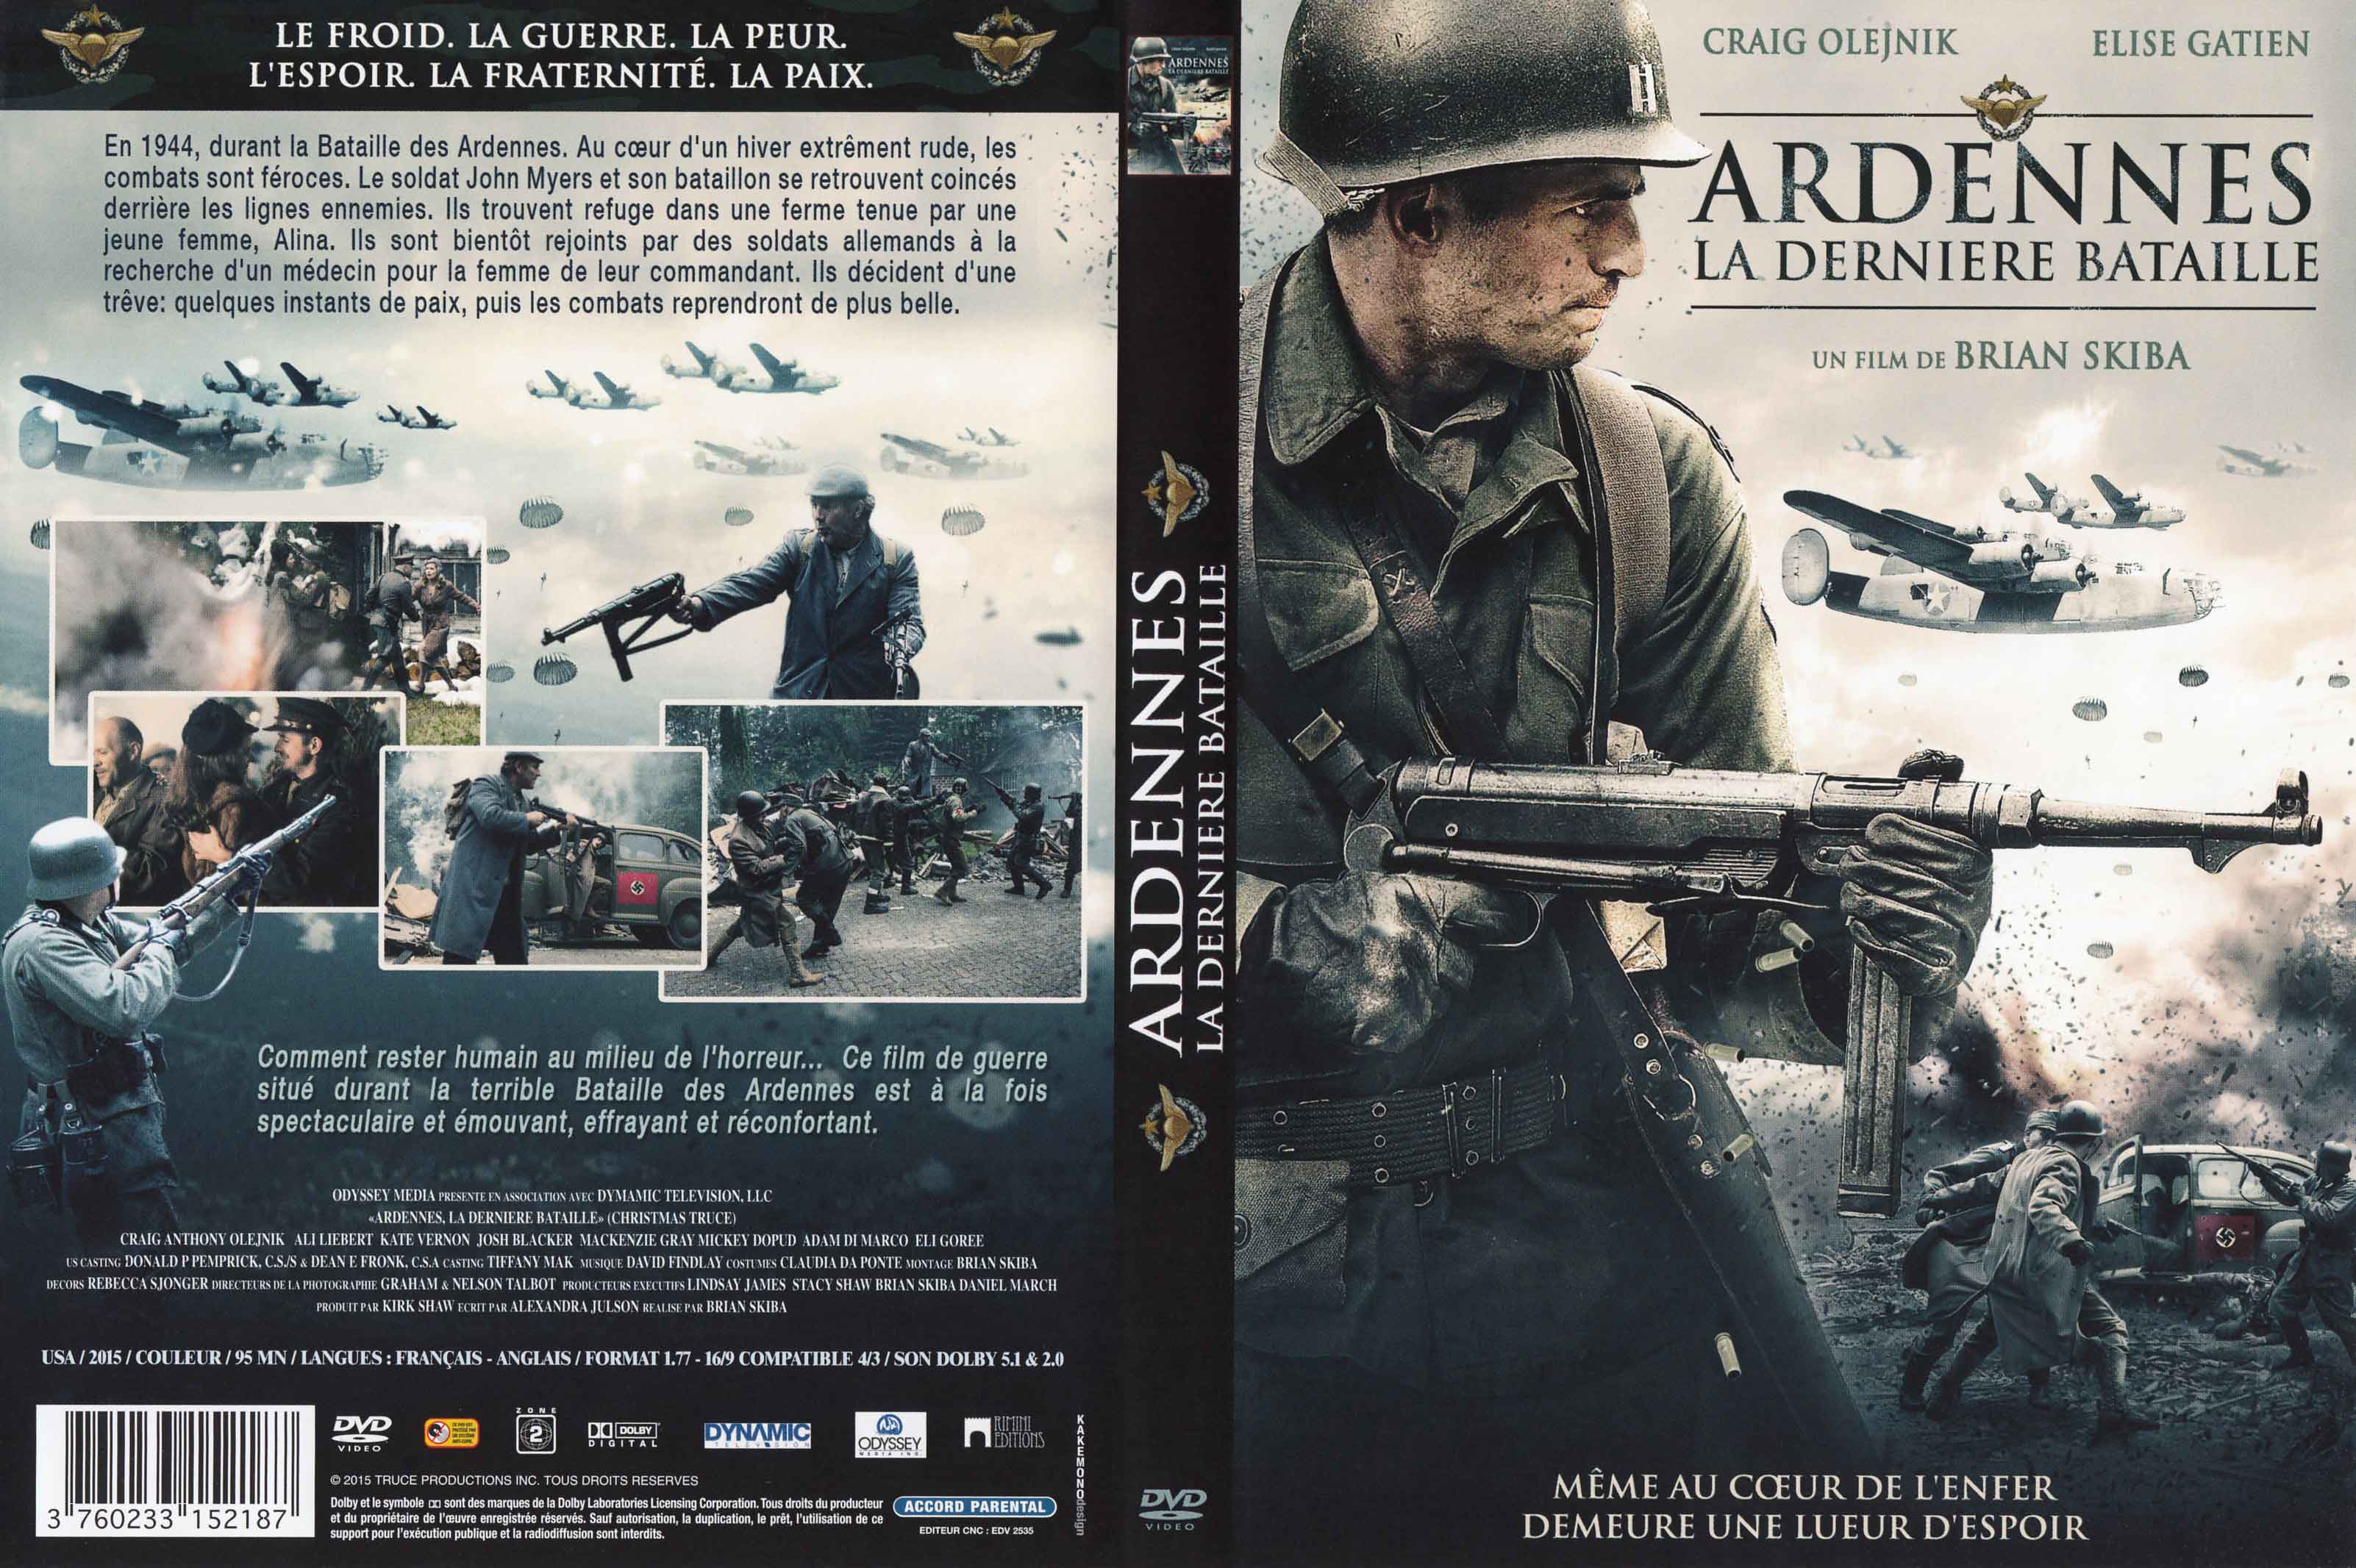 Jaquette DVD Ardennes la dernire bataille